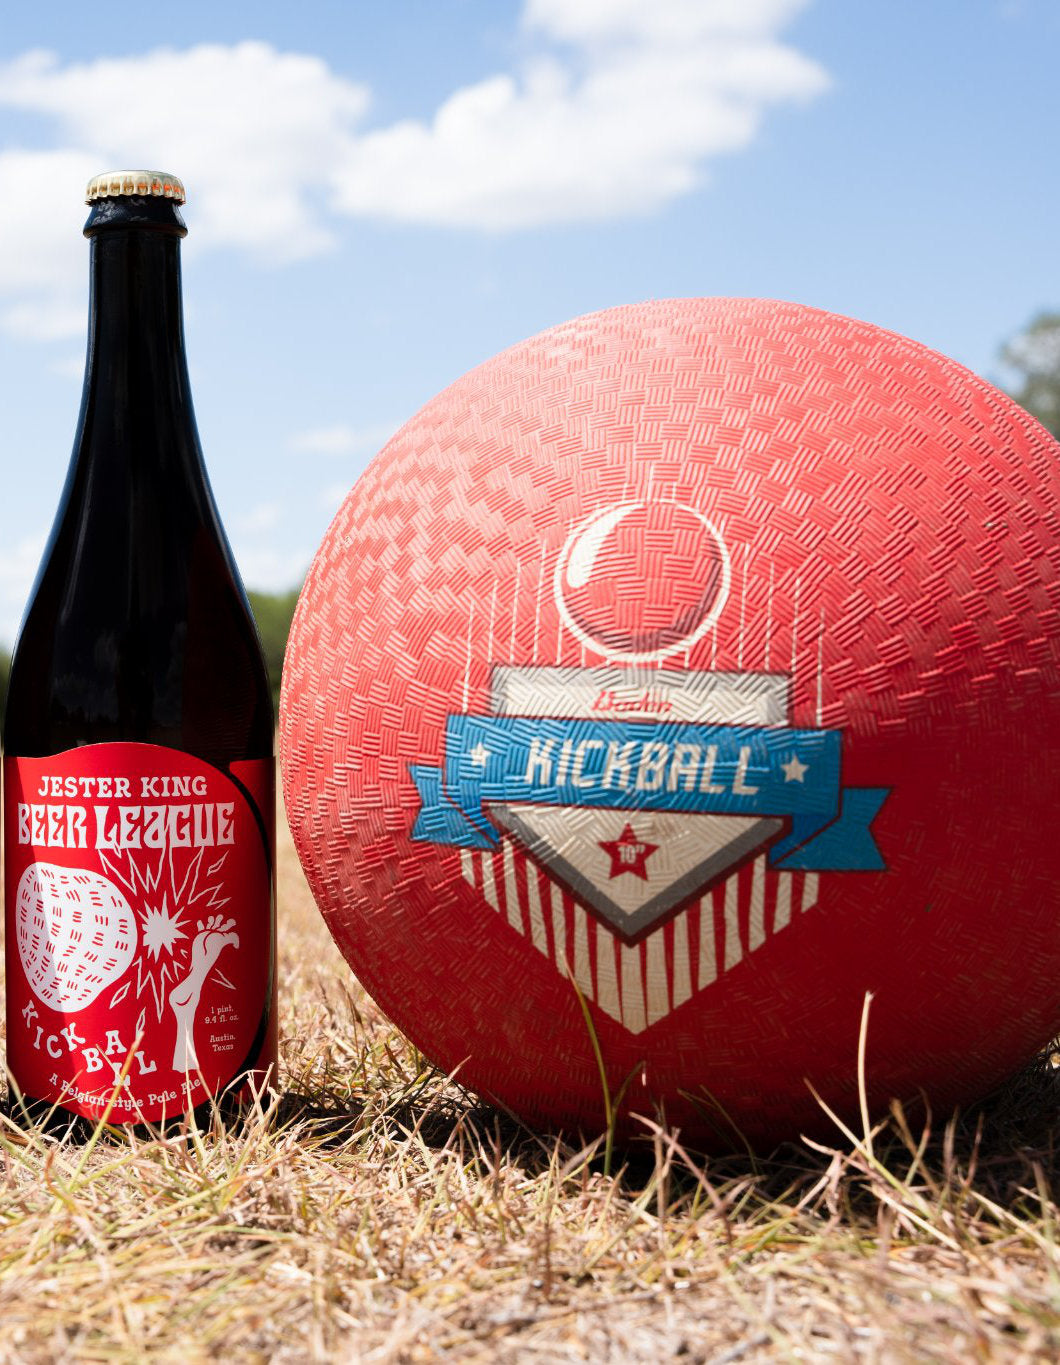 Beer League Kickball